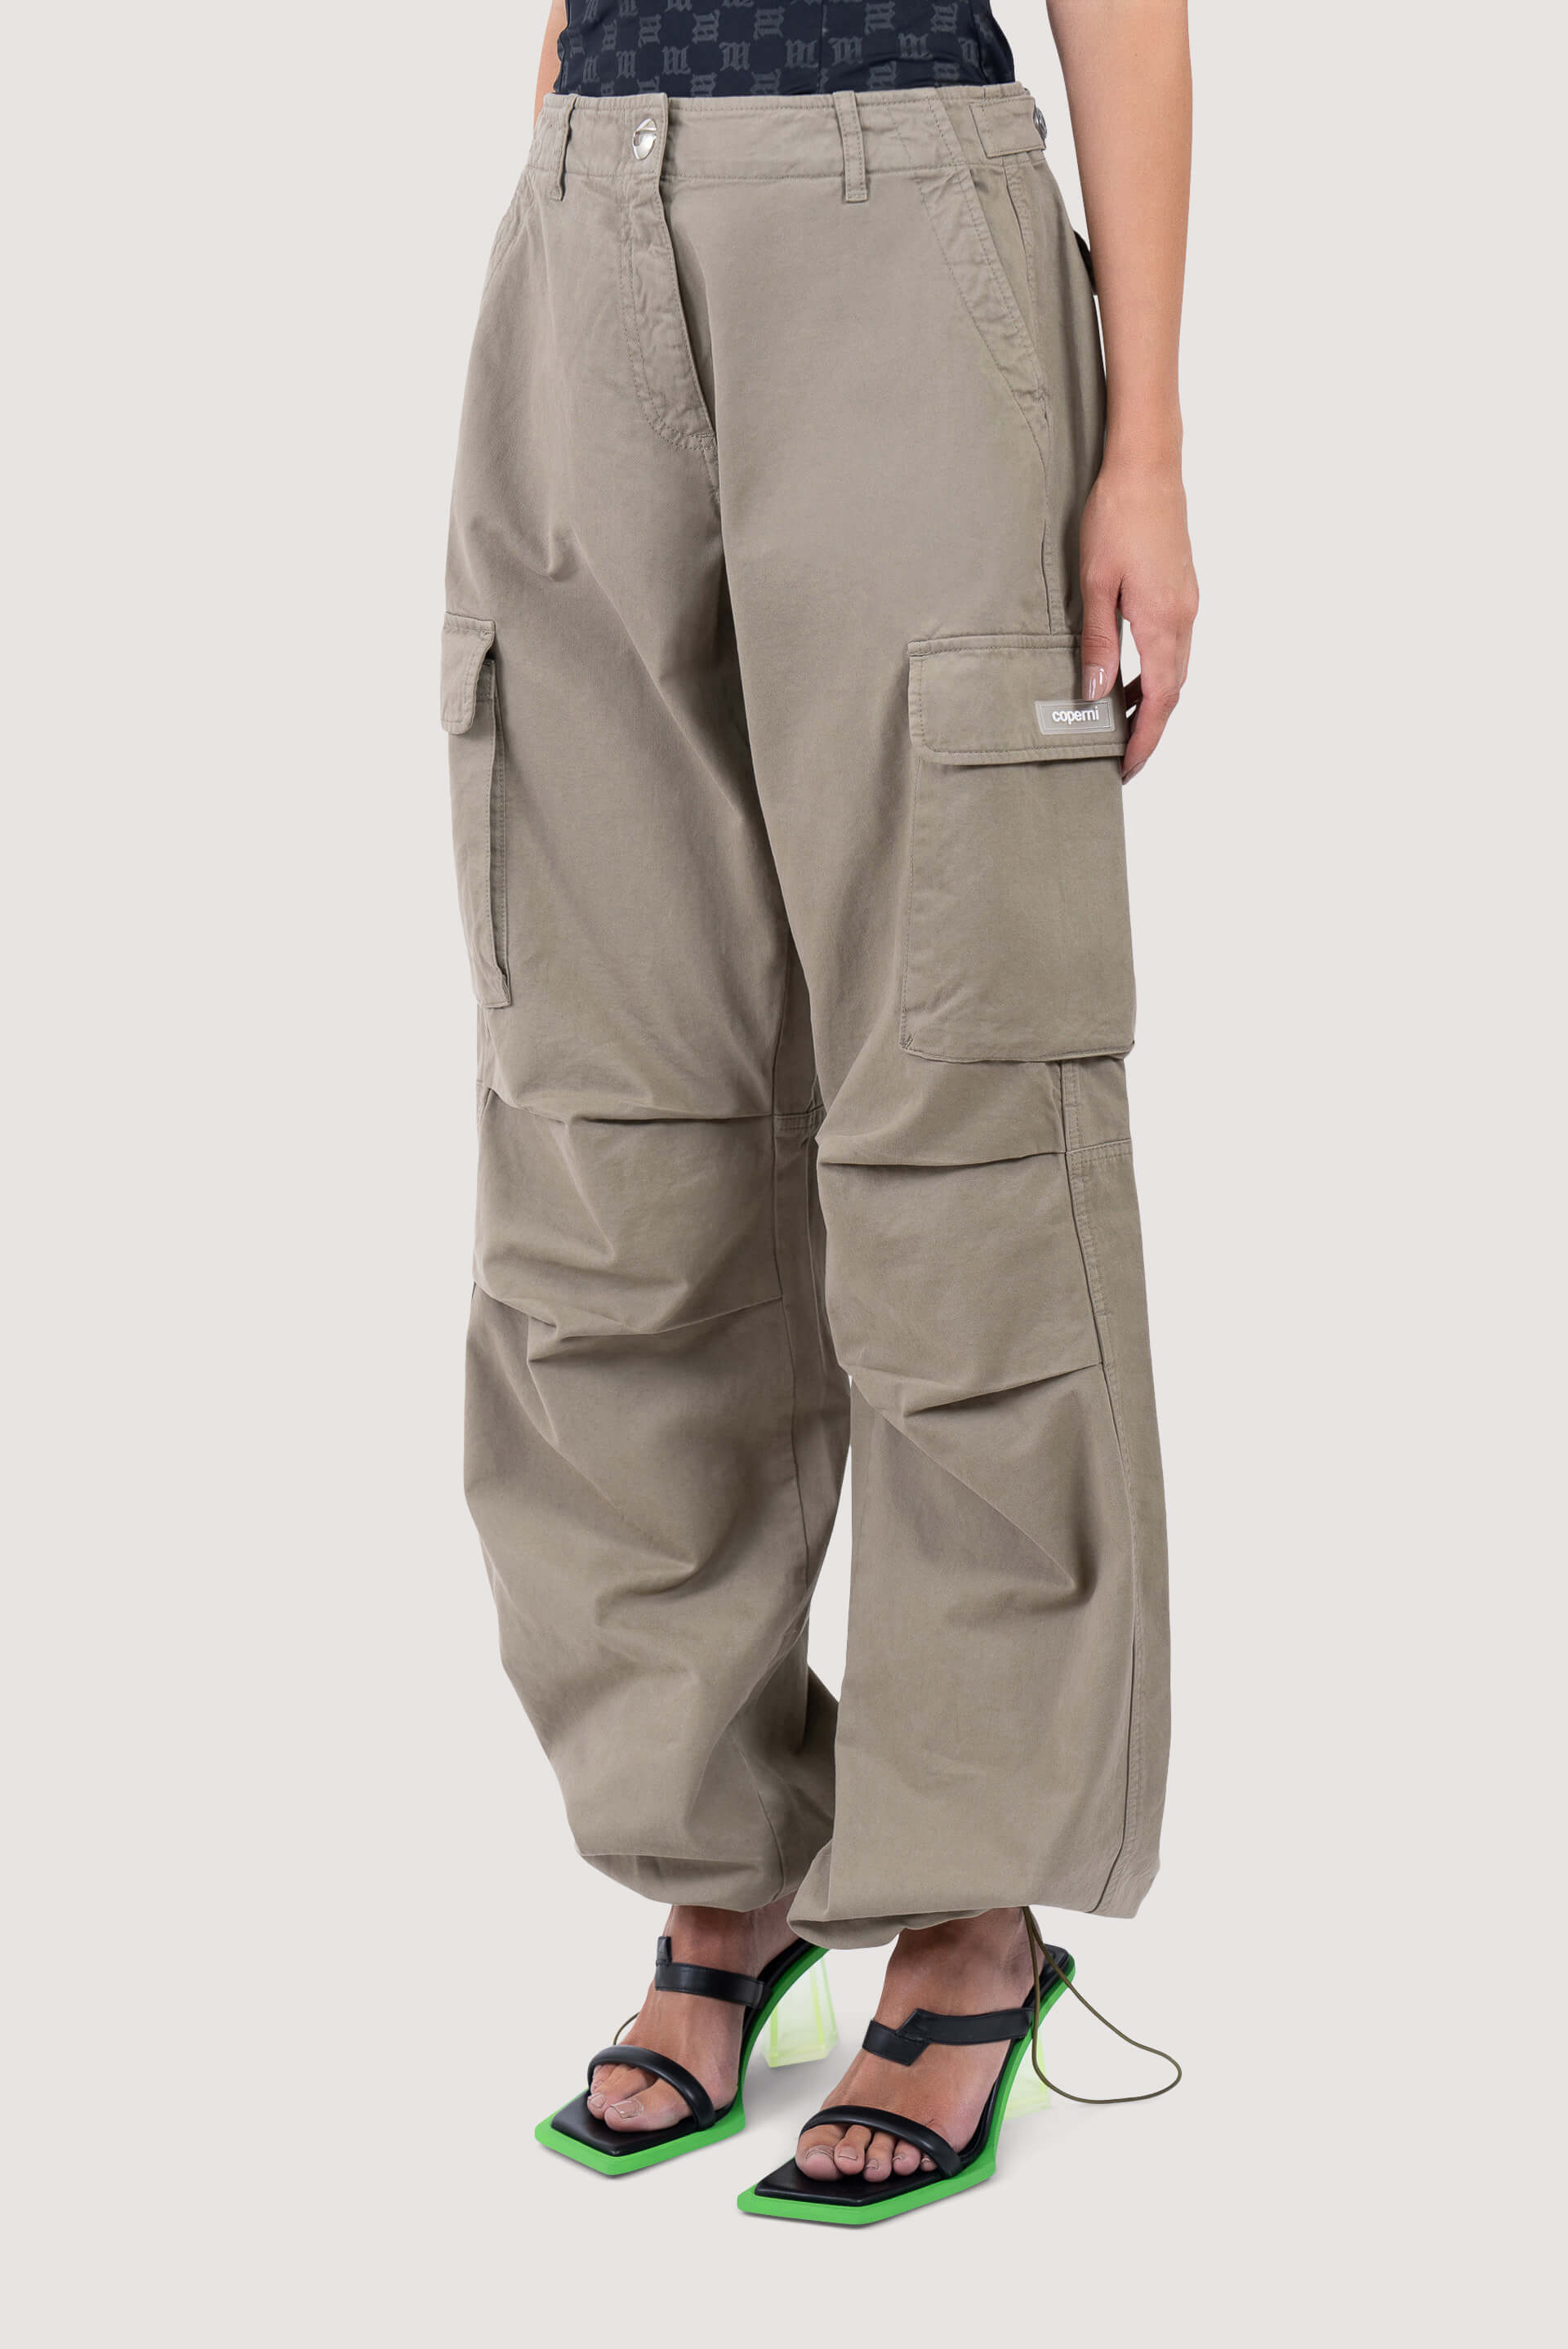 Beige Wide-Leg Cargo Pants by Coperni on Sale